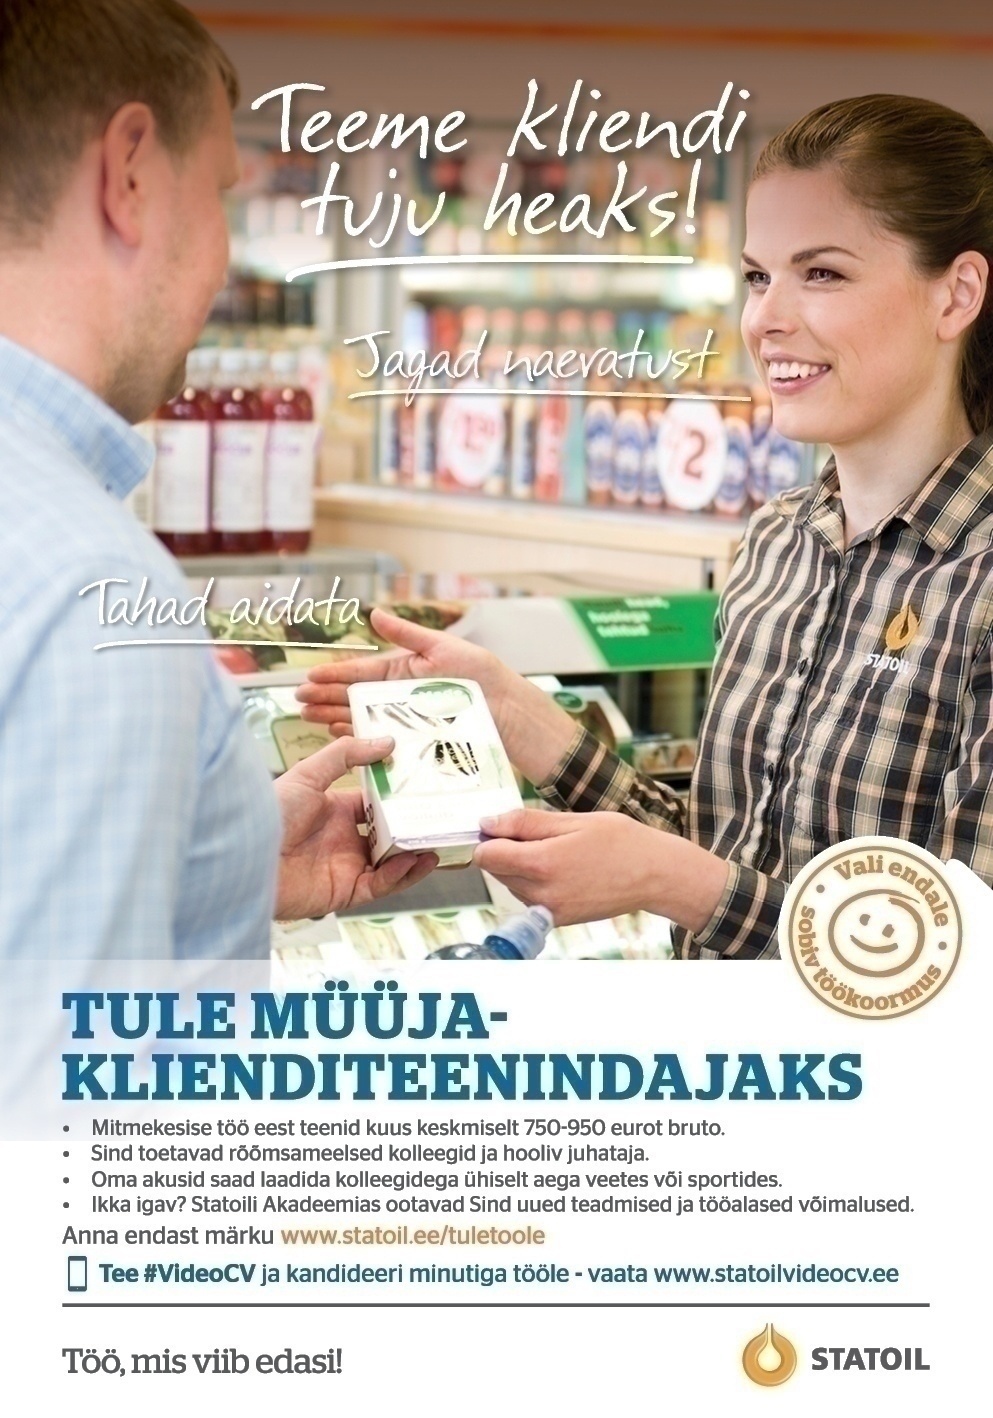 Circle K Eesti AS Müüja-klienditeenindaja Tallinna Kristiine ja Endla teenindusjaama